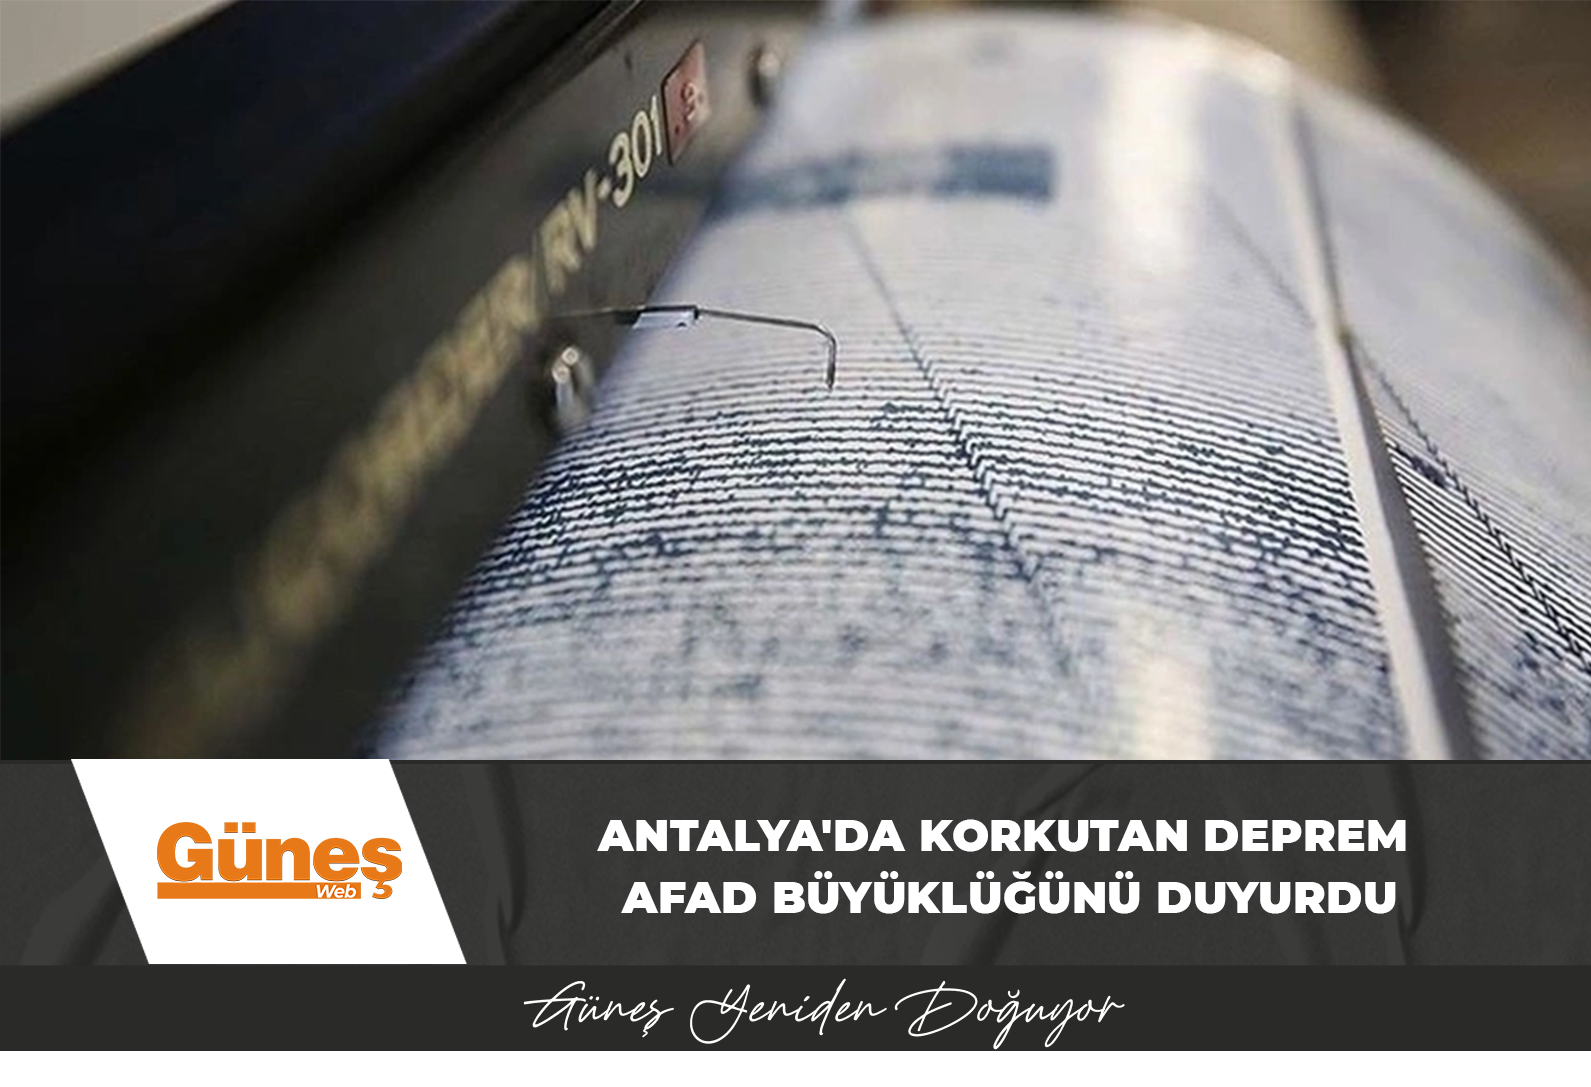 Antalya’da korkutan deprem: AFAD büyüklüğünü duyurdu